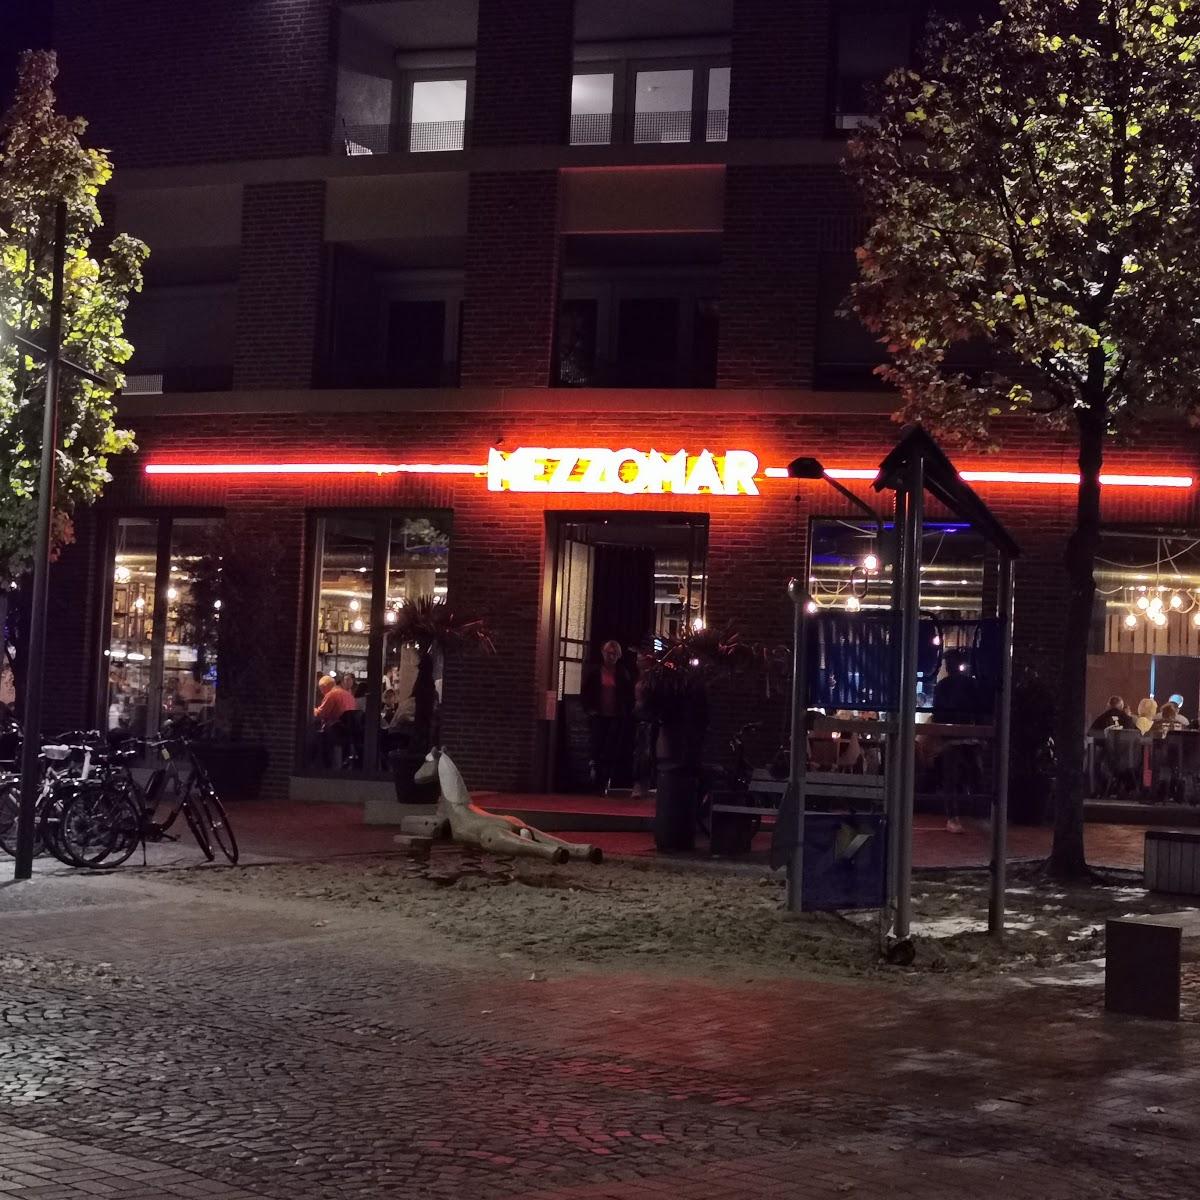 Restaurant "Mezzomar" in  Greven